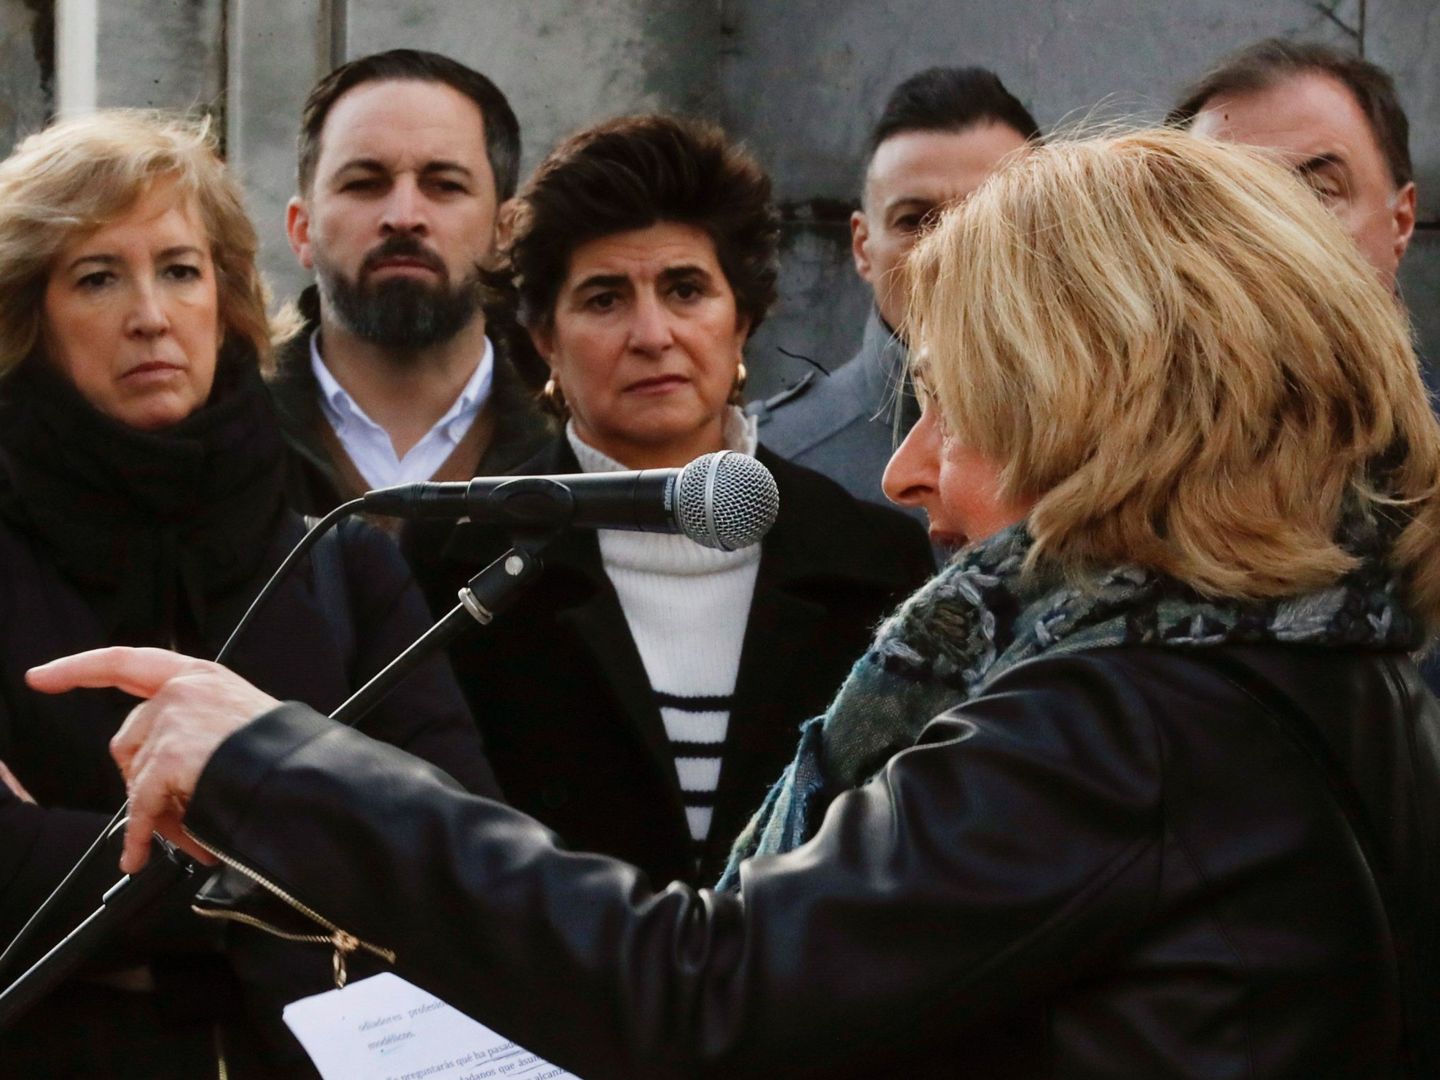 Ana Iríbar atiende al discurso de Consuelo Ordóñez, en compañía de María San Gil y Santiago Abascal, en el último homenaje a Gregorio en el cementerio de Polloe con motivo del aniversario de su asesinato. (EFE)